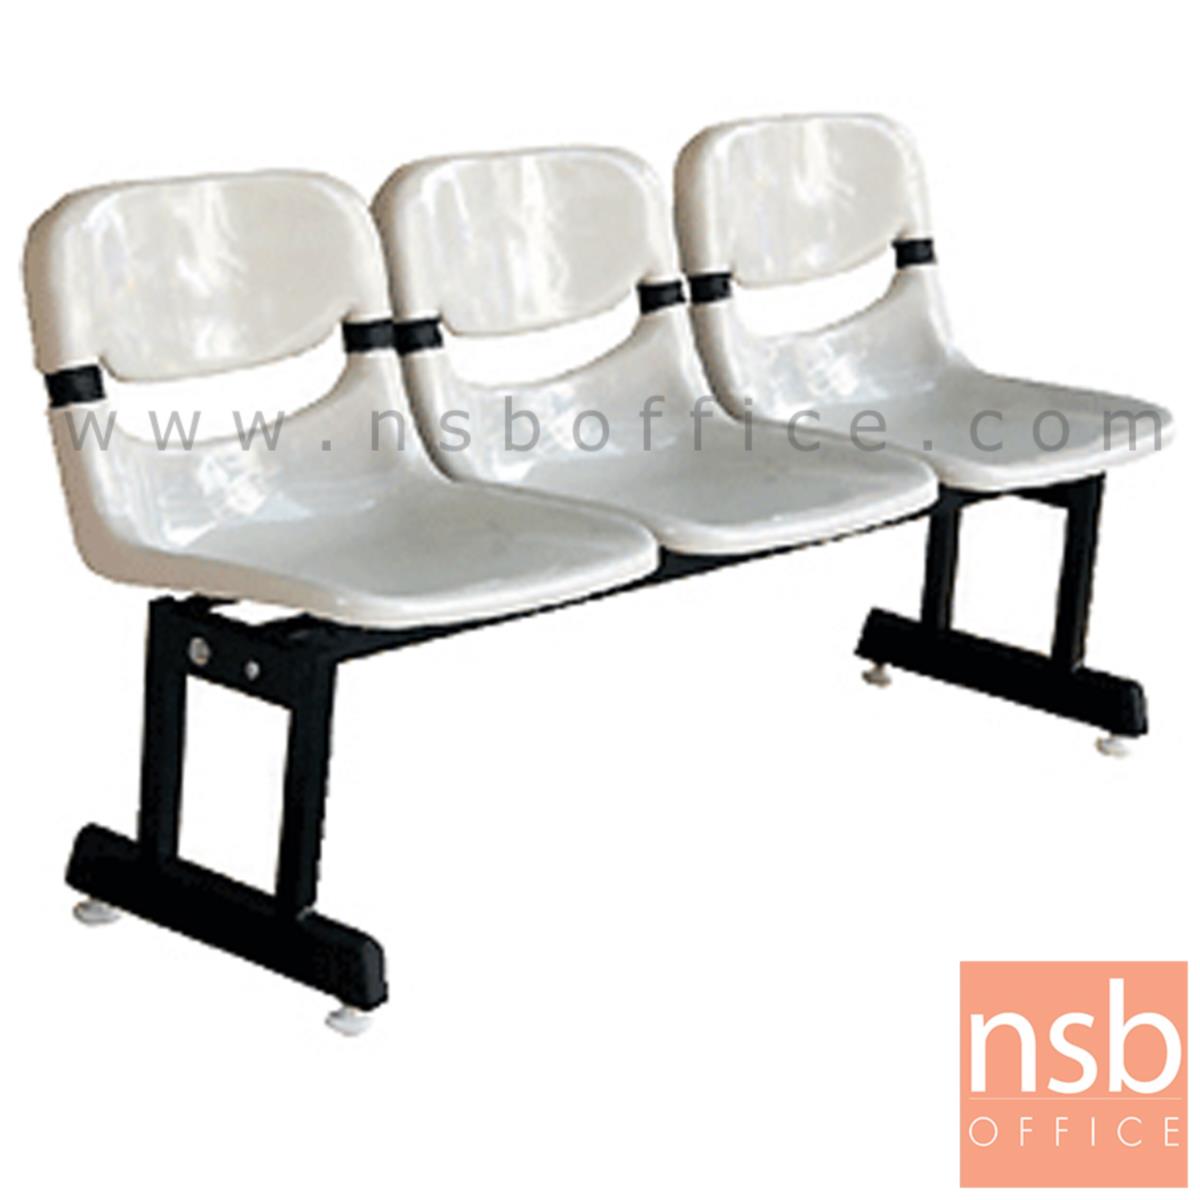 B06A063:เก้าอี้นั่งคอยเฟรมโพลี่ รุ่น EX-11 2 ,3 ,4 ที่นั่ง ขนาด 100W ,155W ,200W cm. ขาเหล็ก